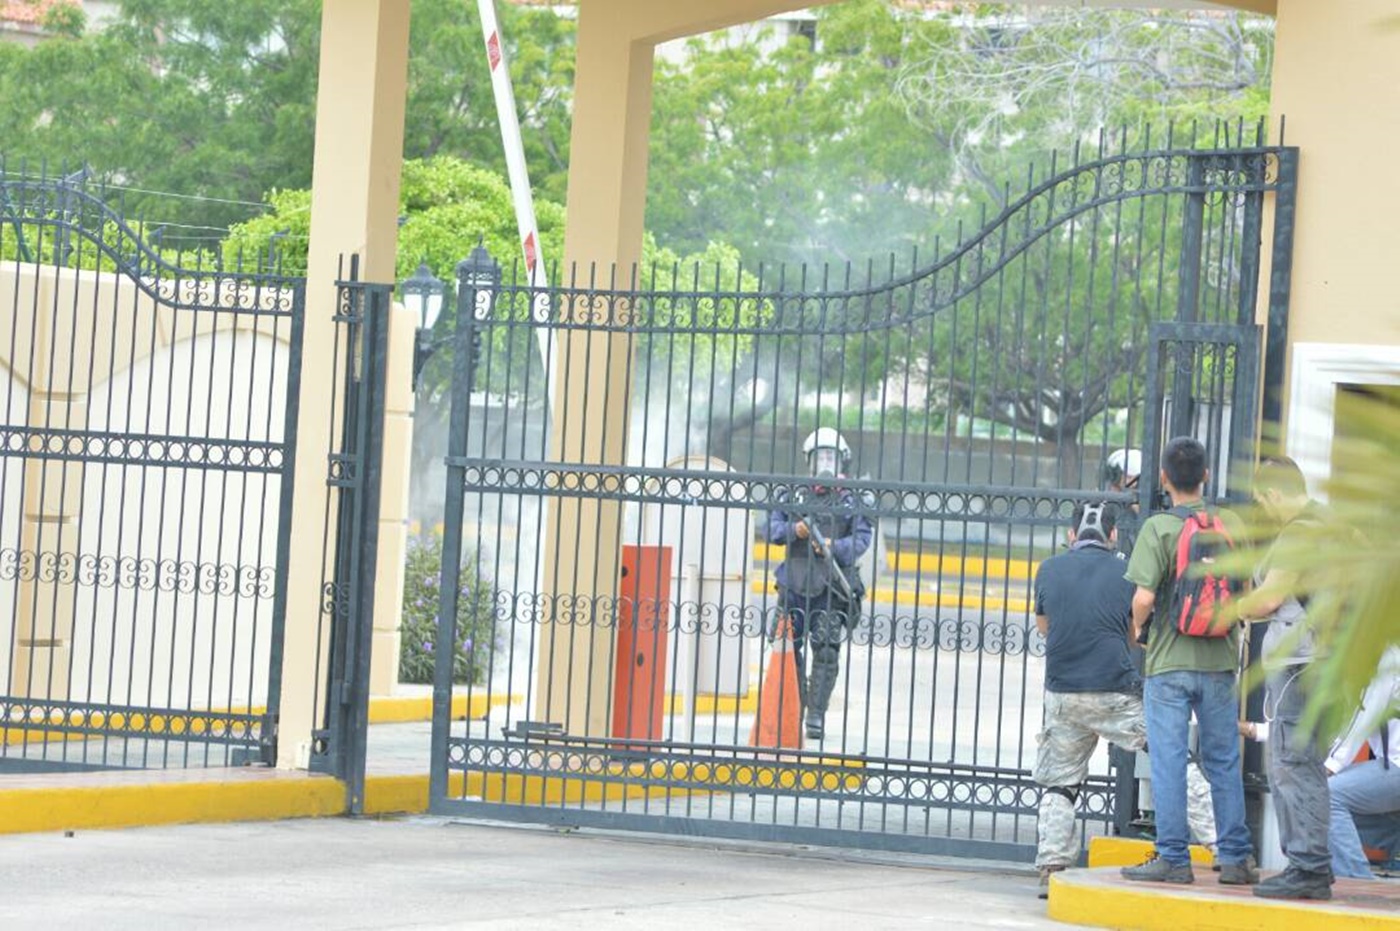 Piquete de la GNB disuelve movilización en el Zulia con gases lacrimógenos